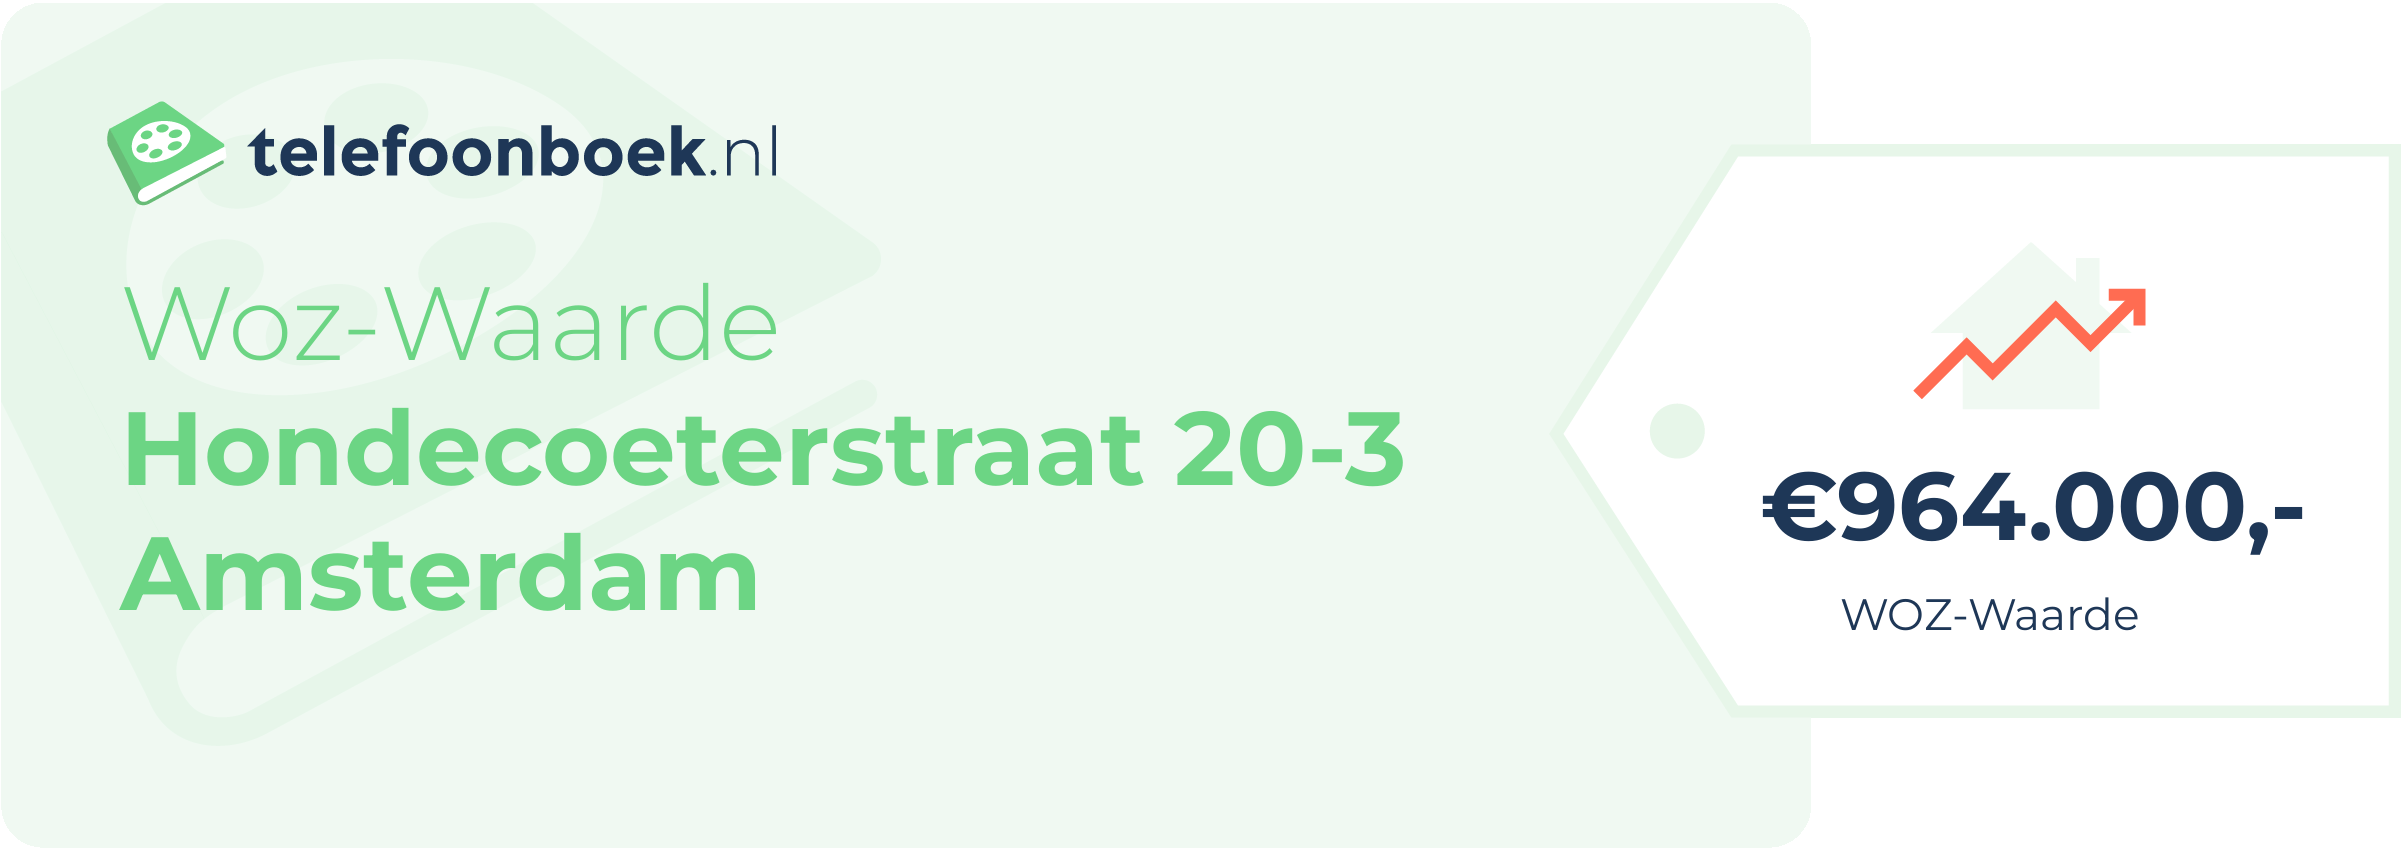 WOZ-waarde Hondecoeterstraat 20-3 Amsterdam